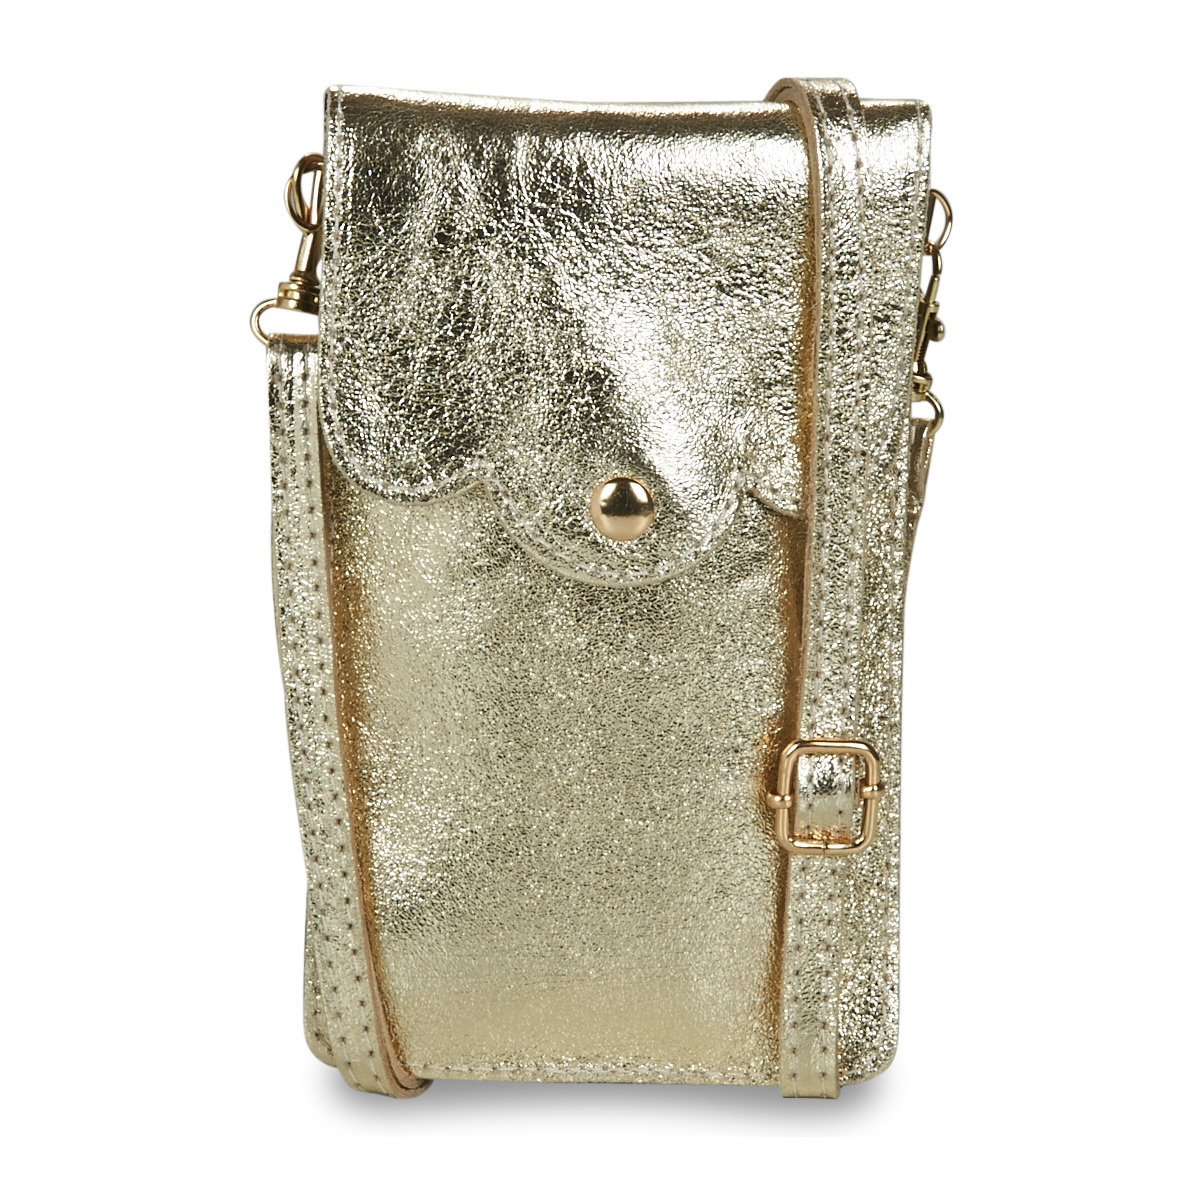 Gold Handbag for Woman at Spartoo GOOFASH